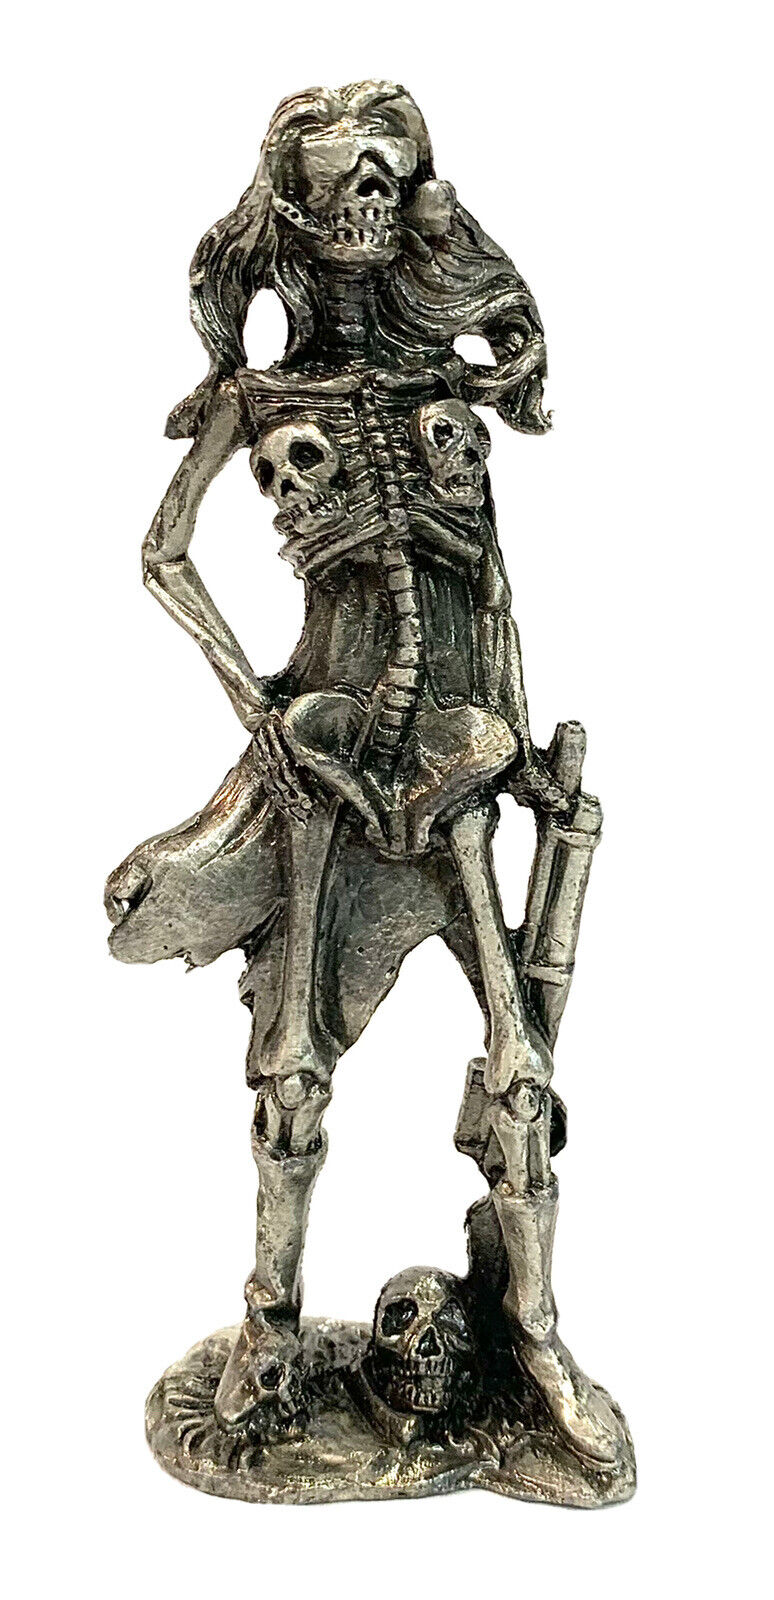 Pewter Figurine 4” Skeleton Pirate Woman Skull Breasts Sunglasses Lead Free